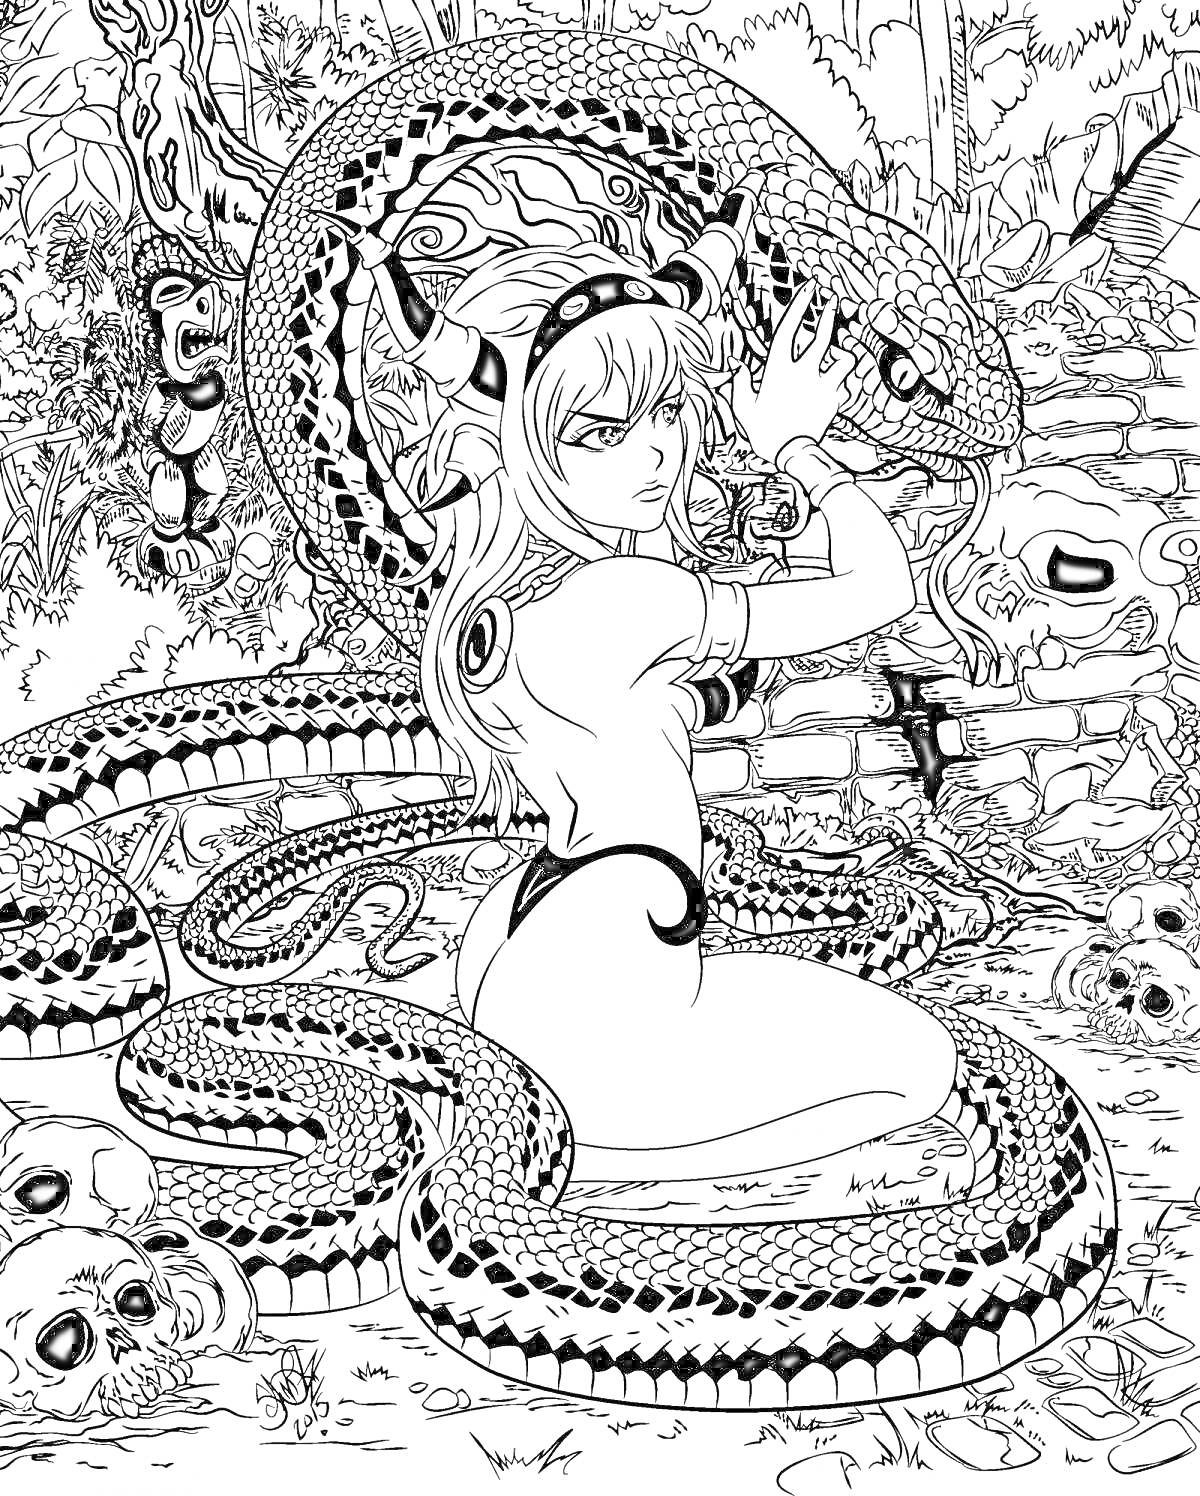 Девушка с рогами, обнимающая большого змея в тропическом лесу со множеством черепов на земле, птица на заднем плане